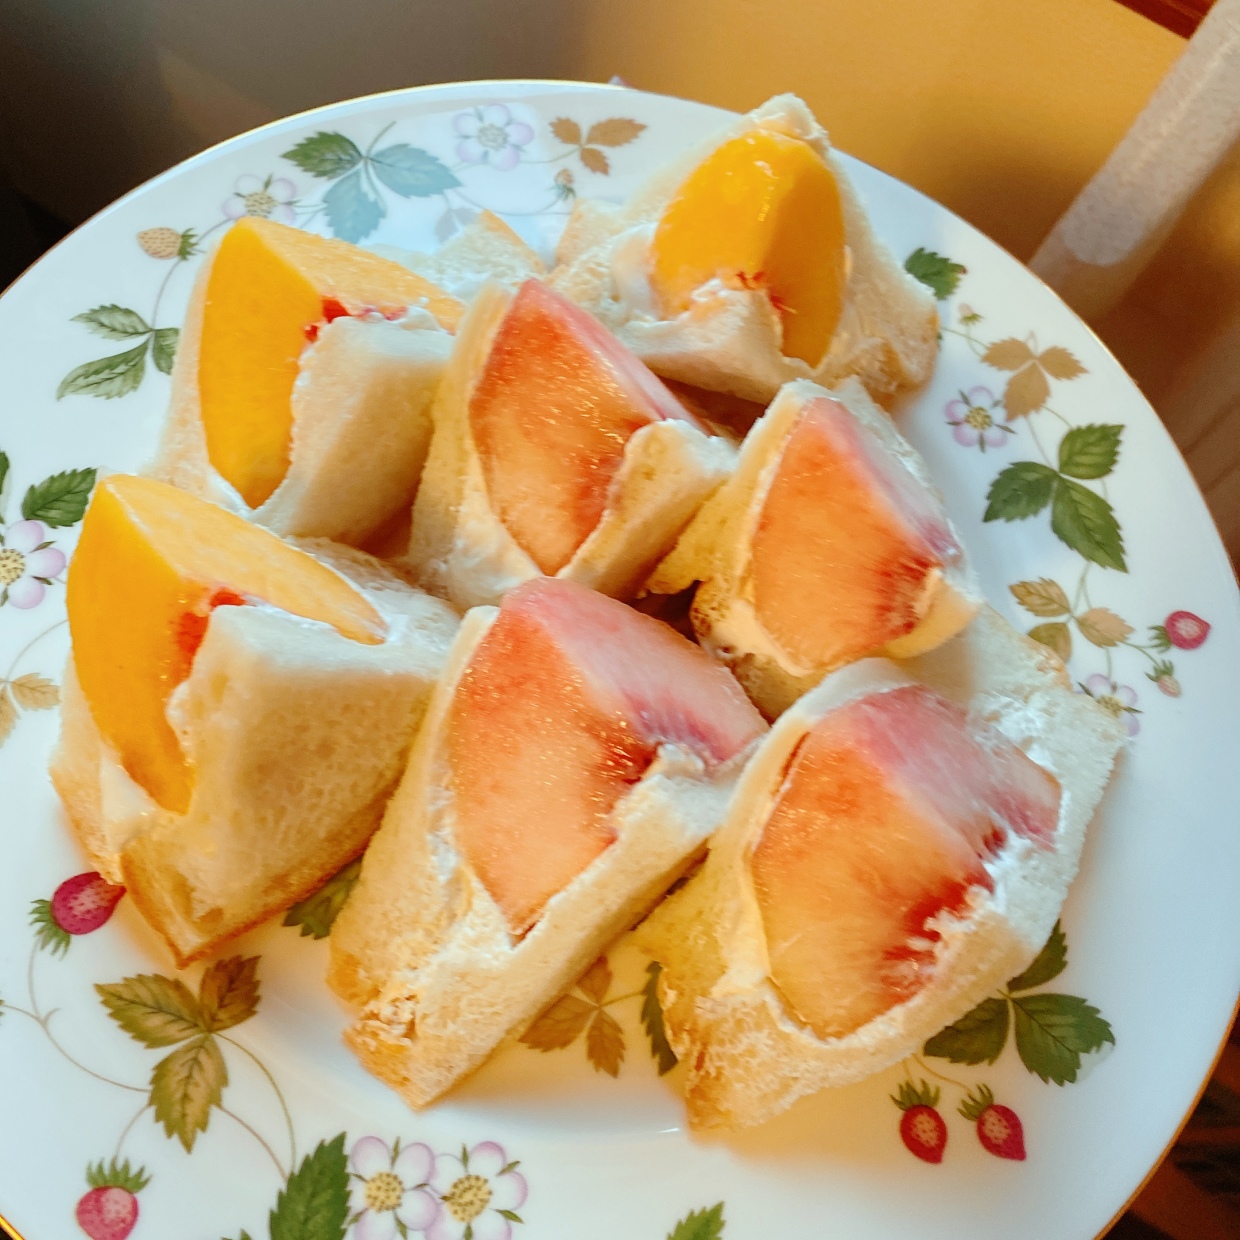  桃の栄養と調理のコツ 